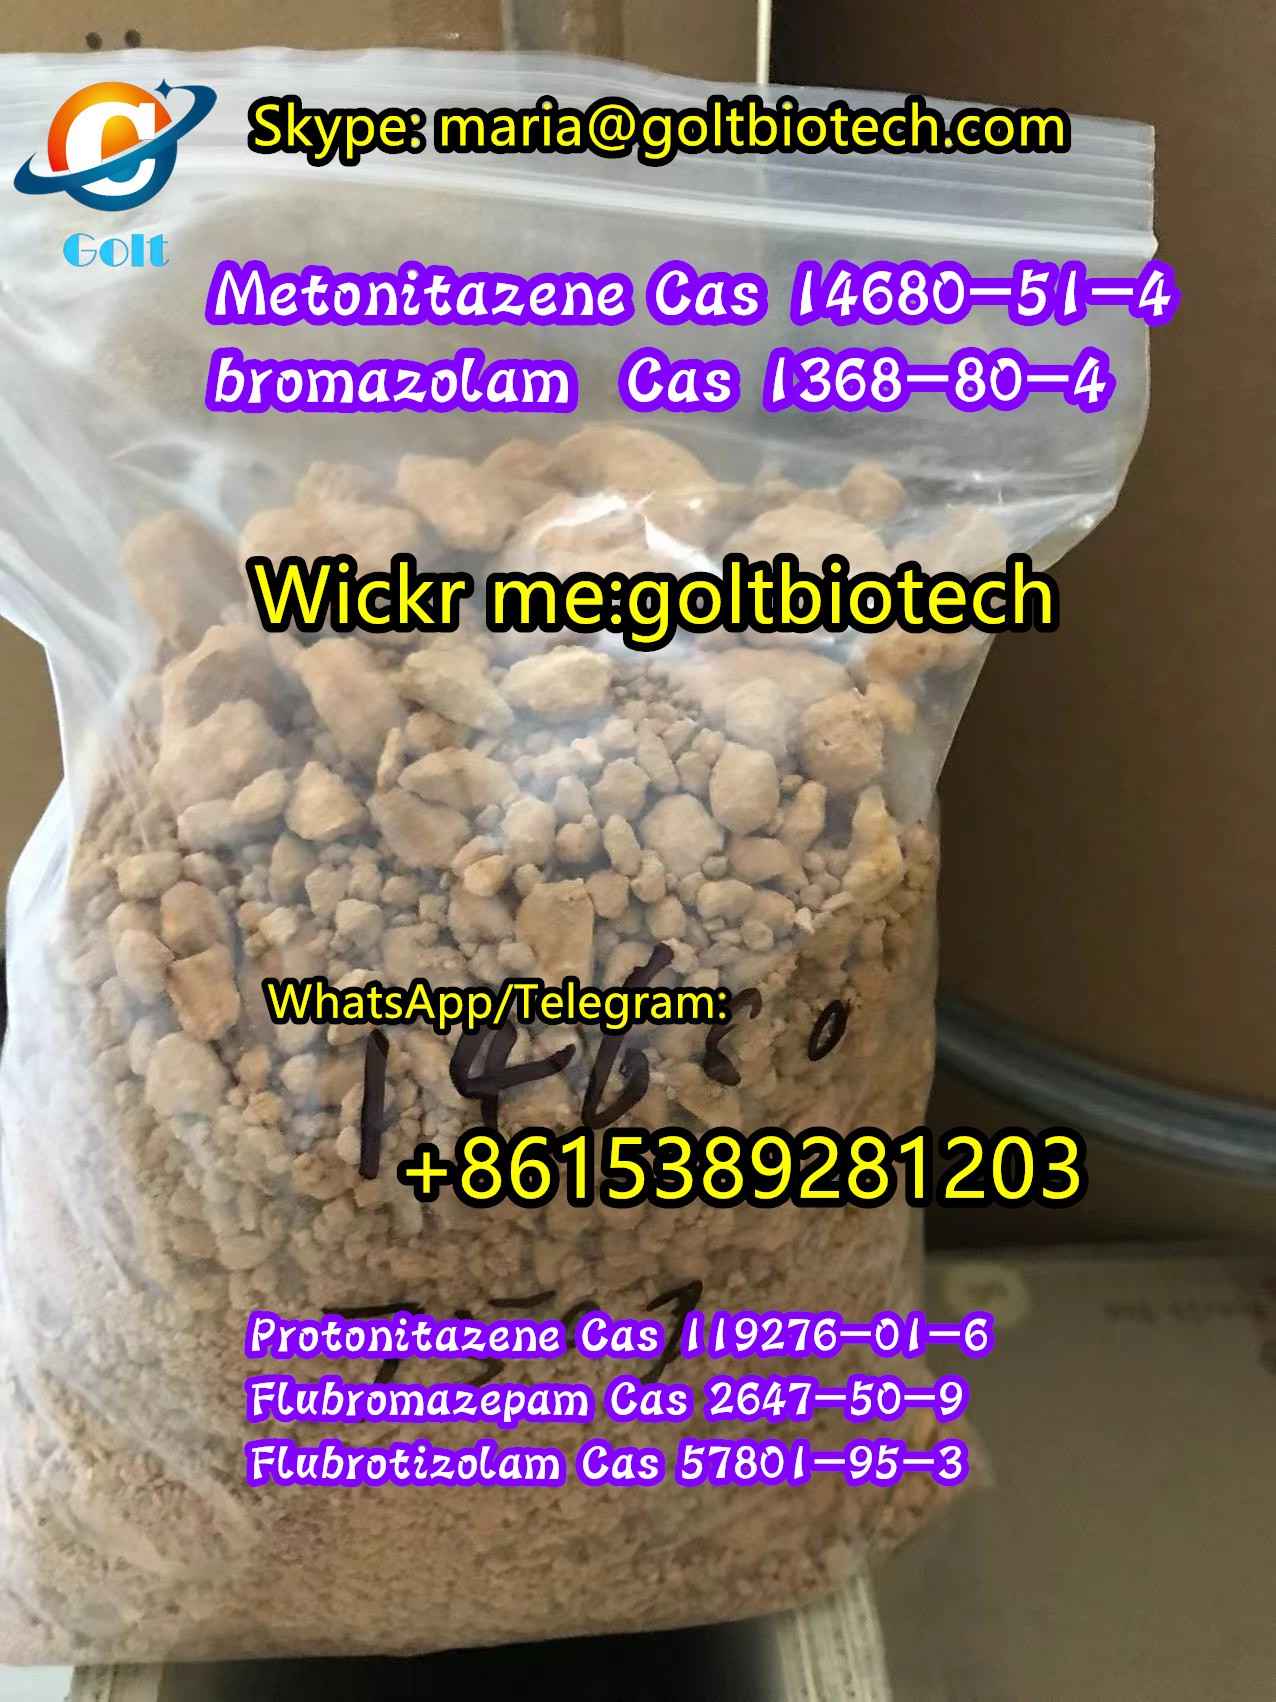 Protonitazene buy Metonitazene Cas 119276-01-6/14680-51-4  wickr me: goltbiotech - photo